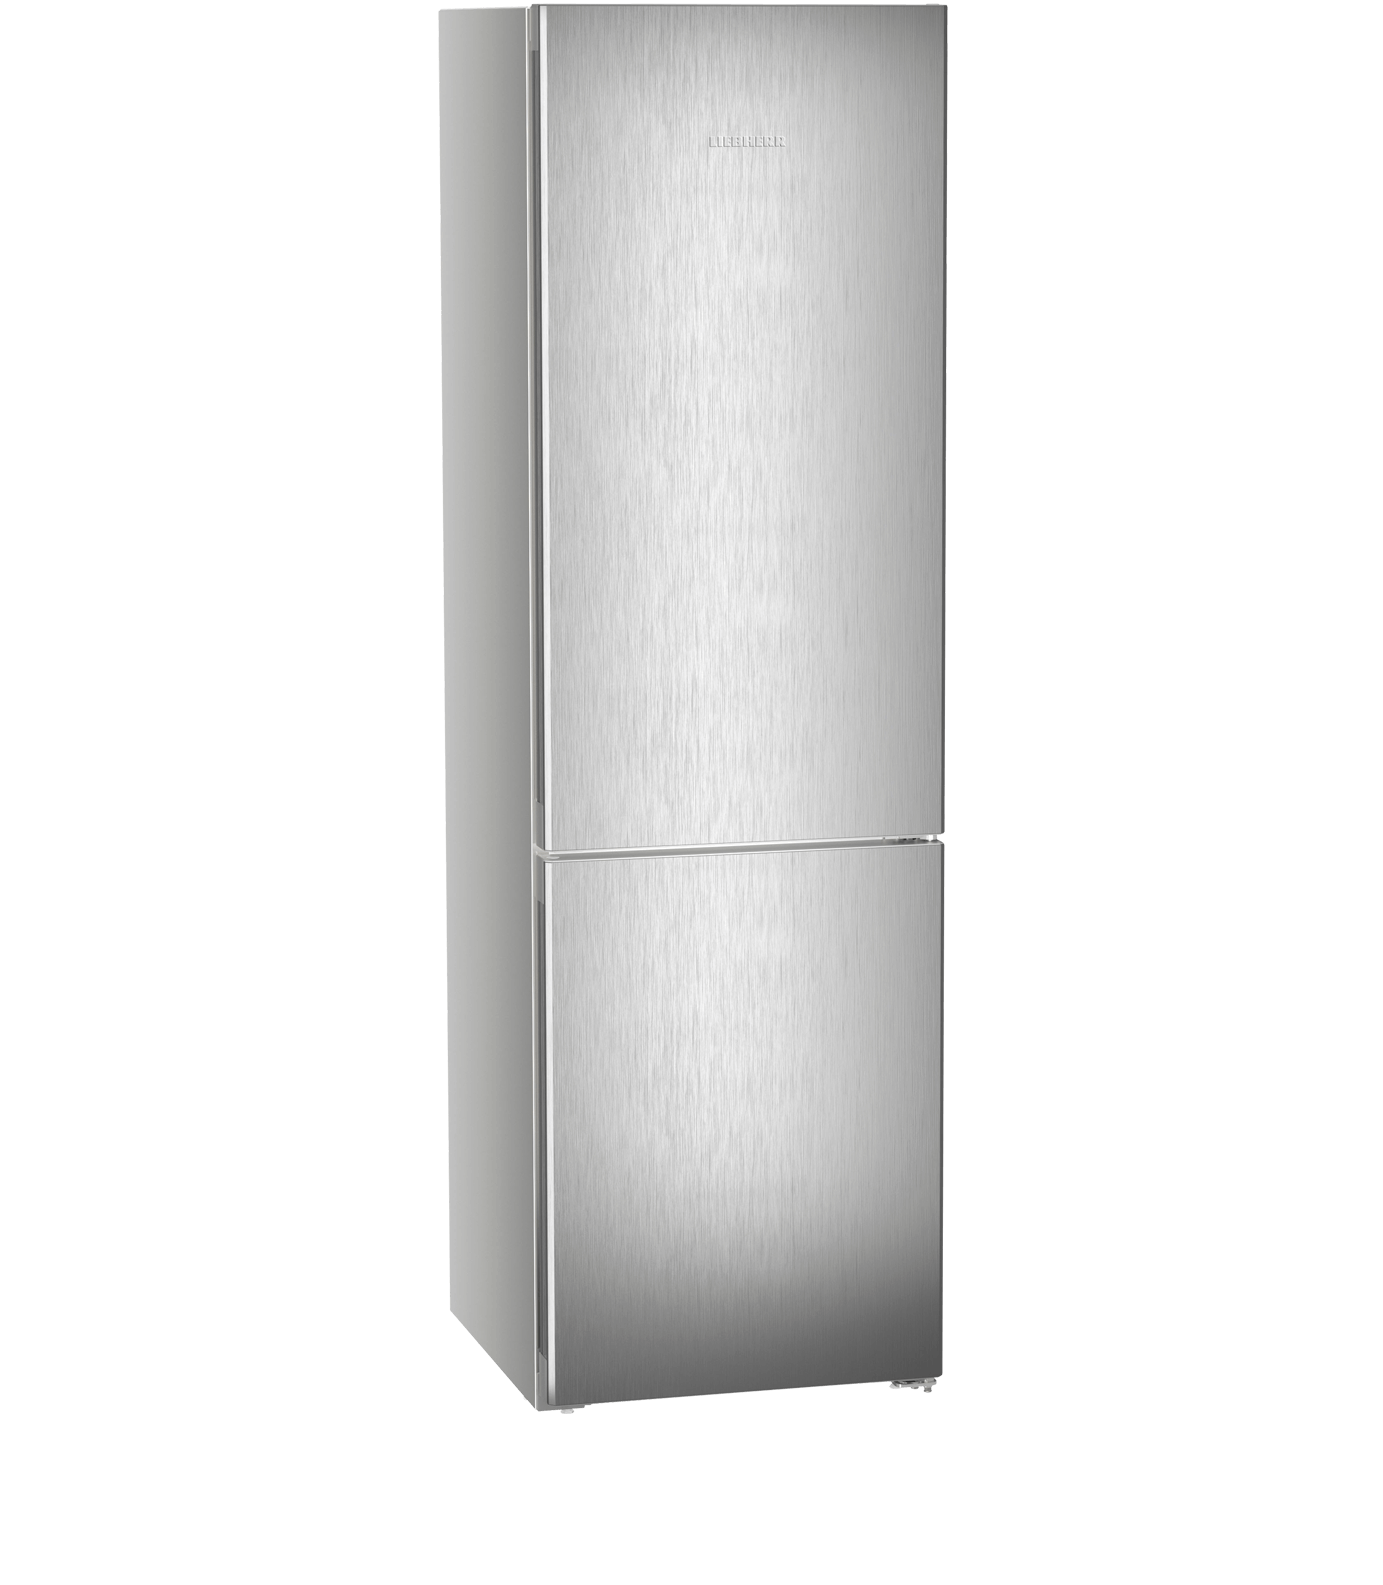 Combiné réfrigérateur/congélateur CNsdd 5723 LIEBHERR